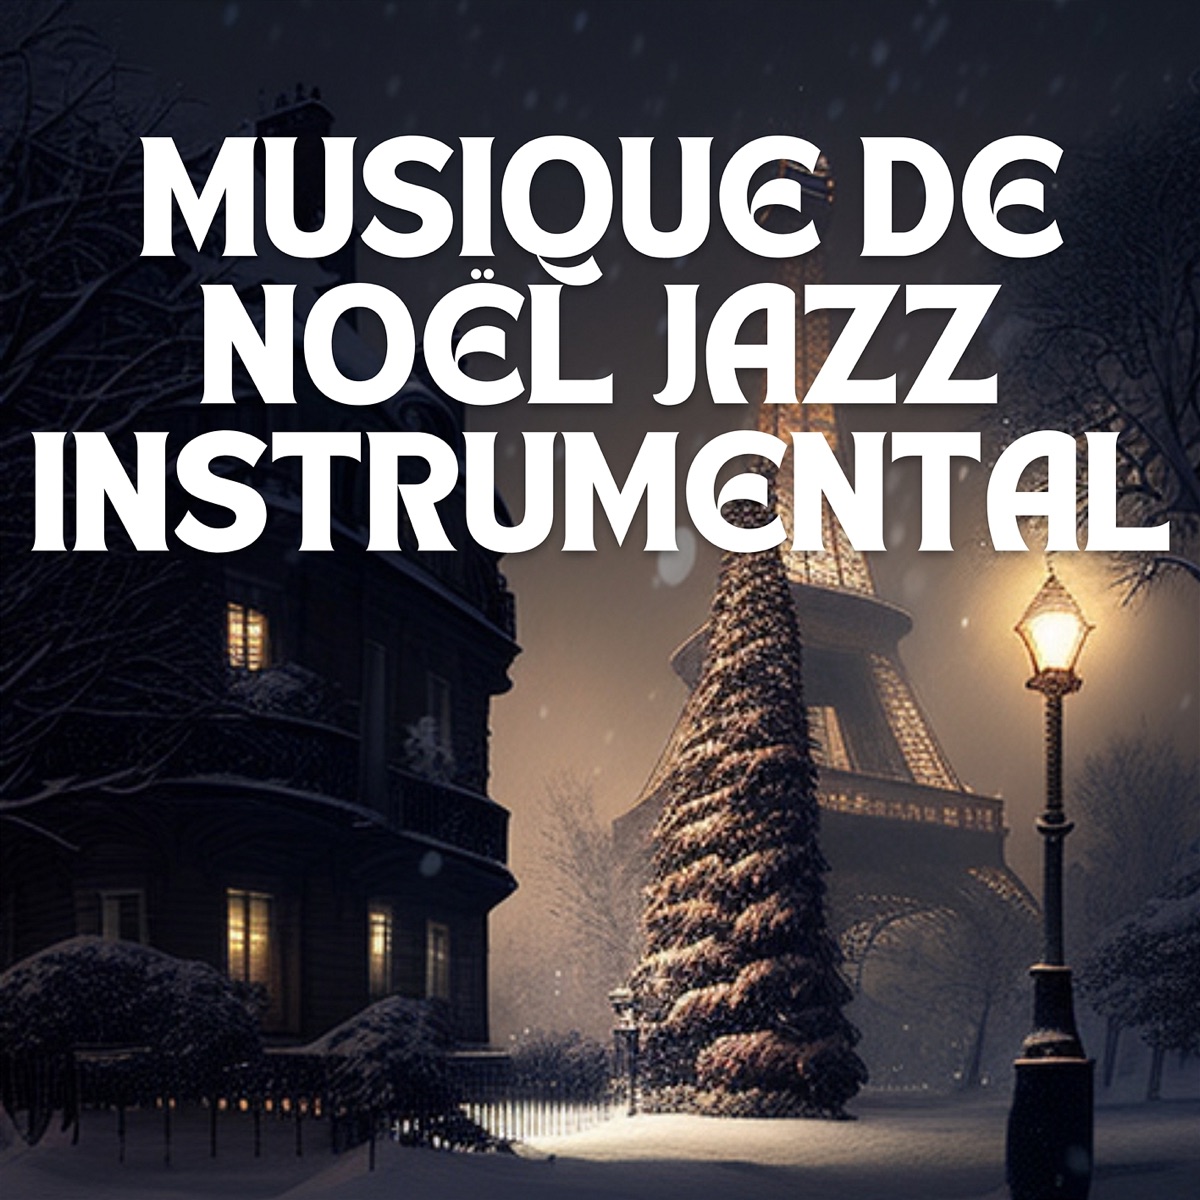 Musique De Noël Jazz Instrumental - Album by Jazz Cafe Musique Paris -  Apple Music